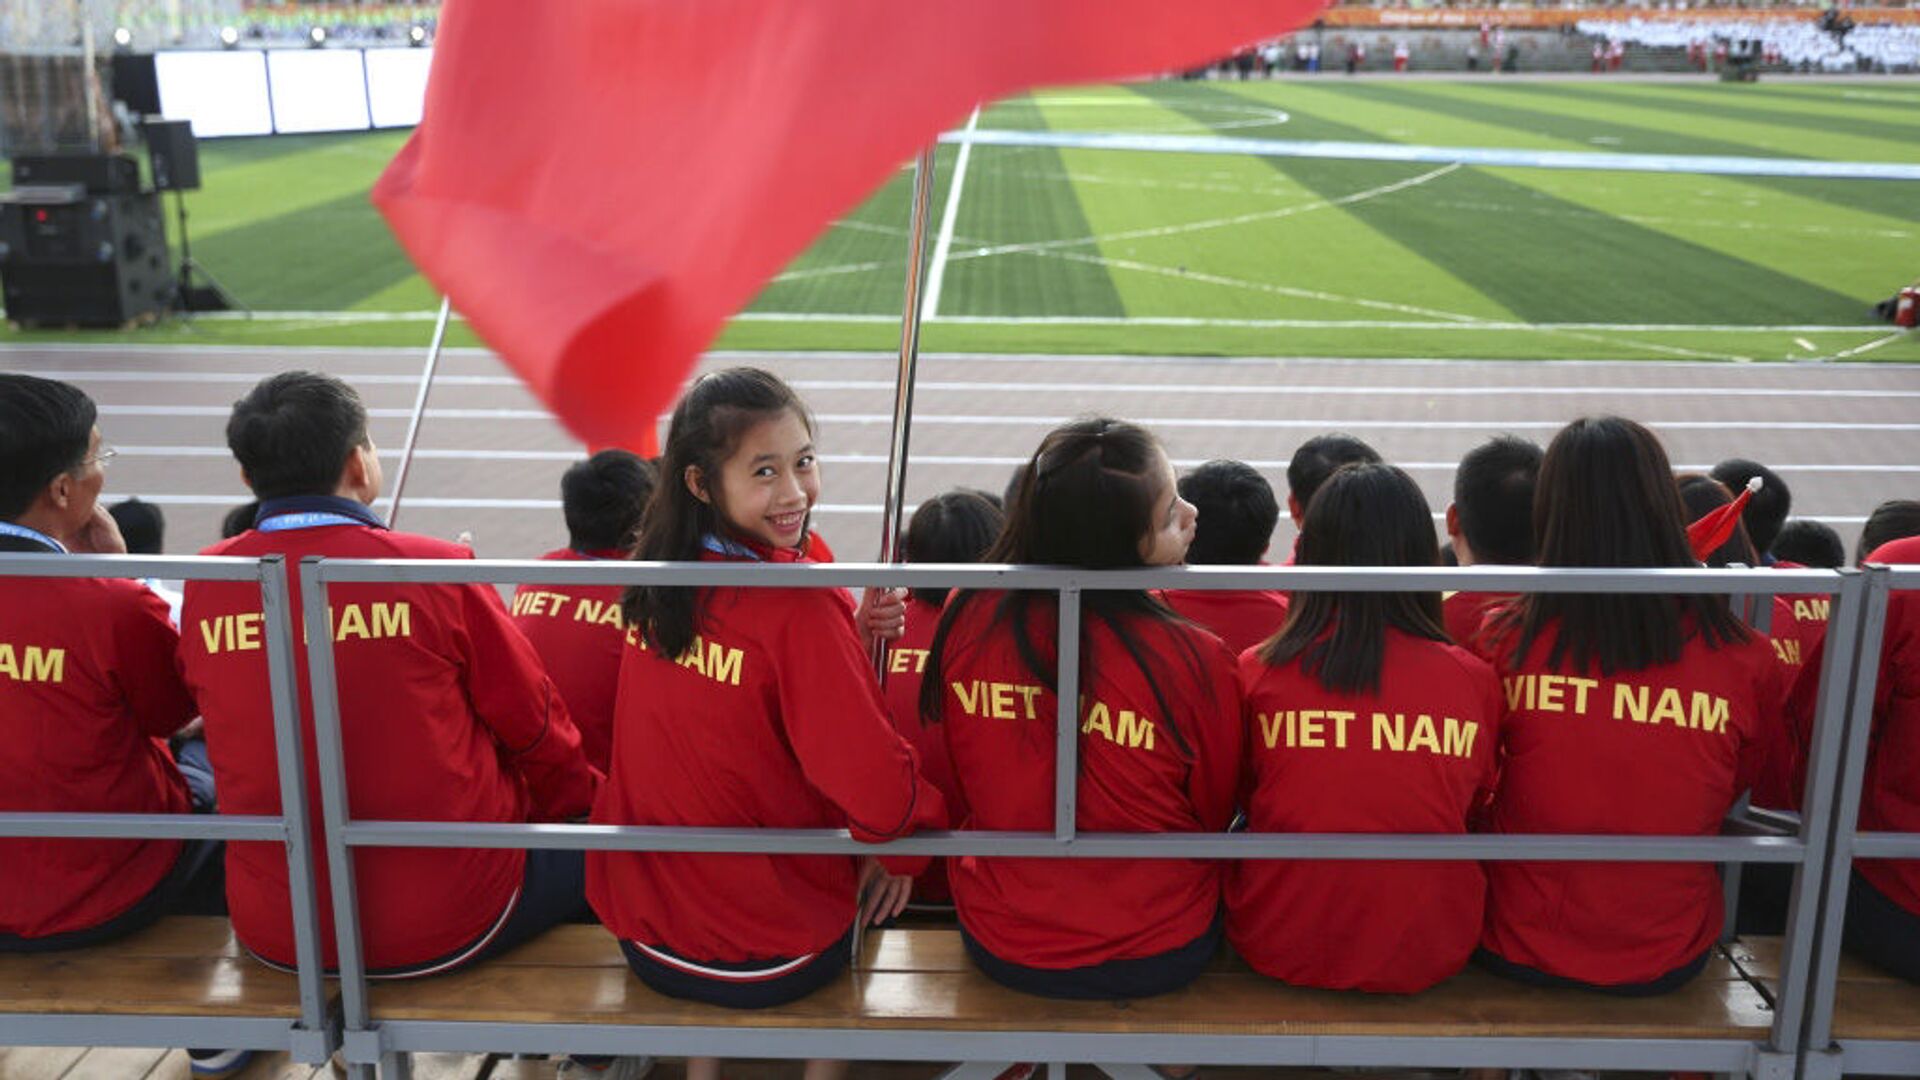 Đoàn Việt Nam tham gia Đại hội Thể thao Quốc tế lần thứ VI Trẻ em châu Á ở Yakutsk - Sputnik Việt Nam, 1920, 23.02.2022